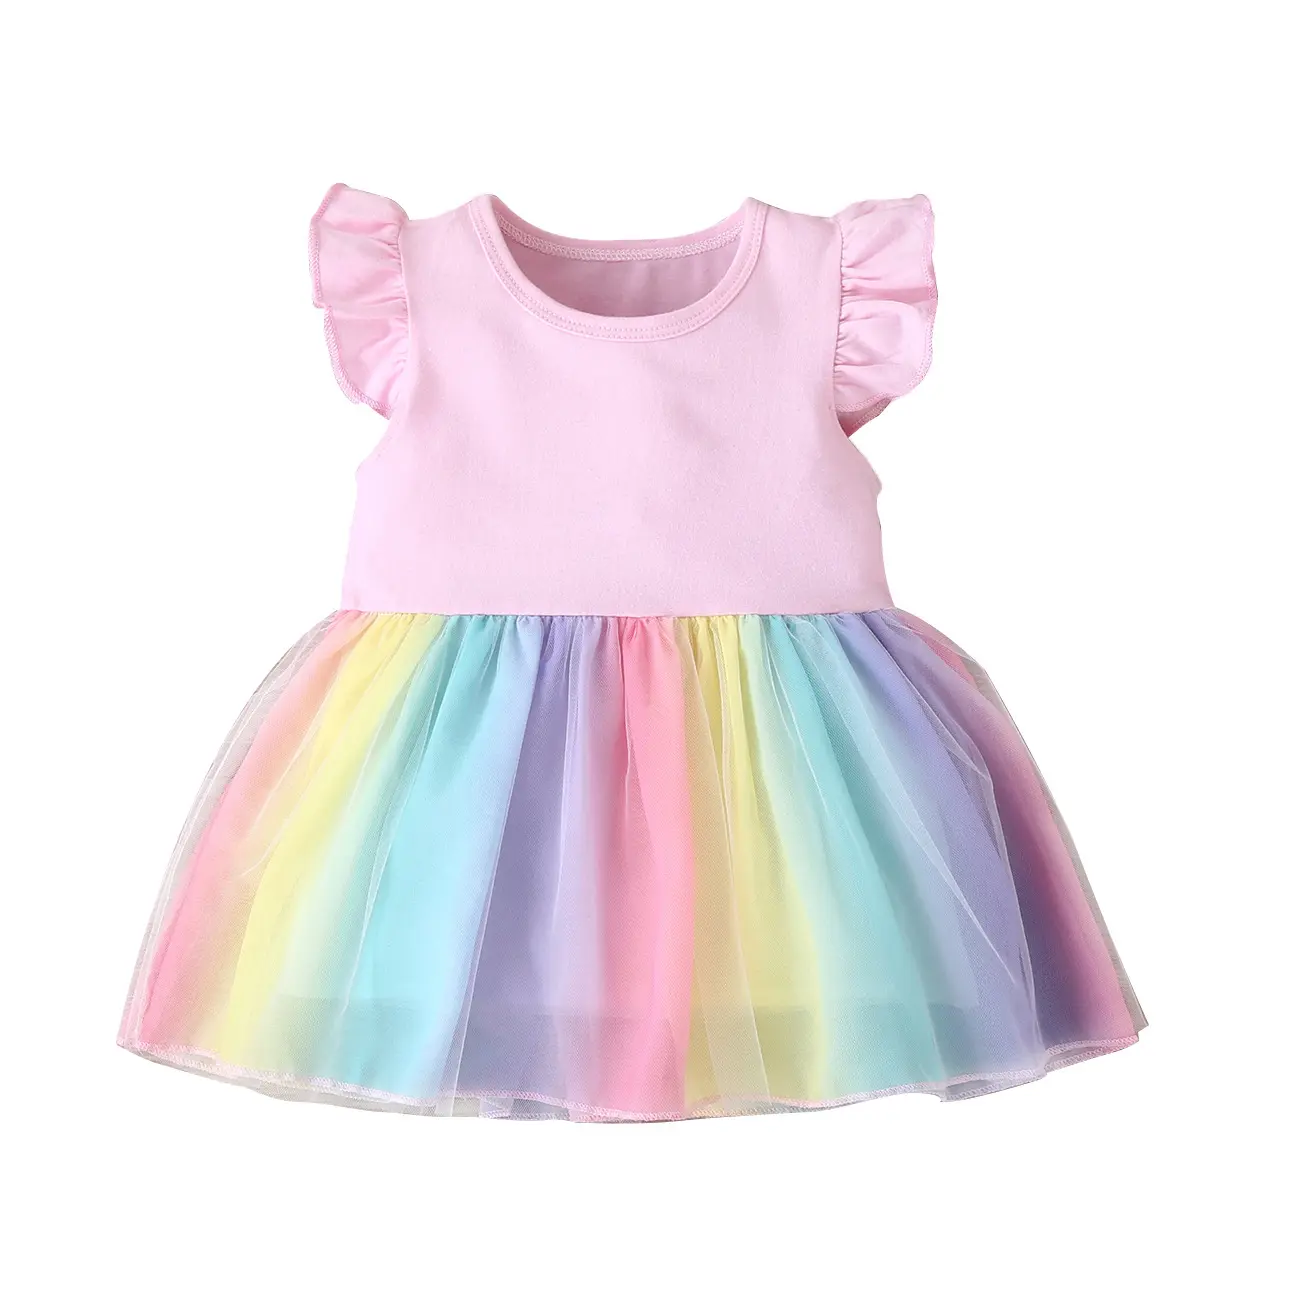 Baby Girl Party Dresses Princesa New Designs 3-4 Yrs Girl Kids Clothing Batizado de aniversário Toddler Girls Dresses